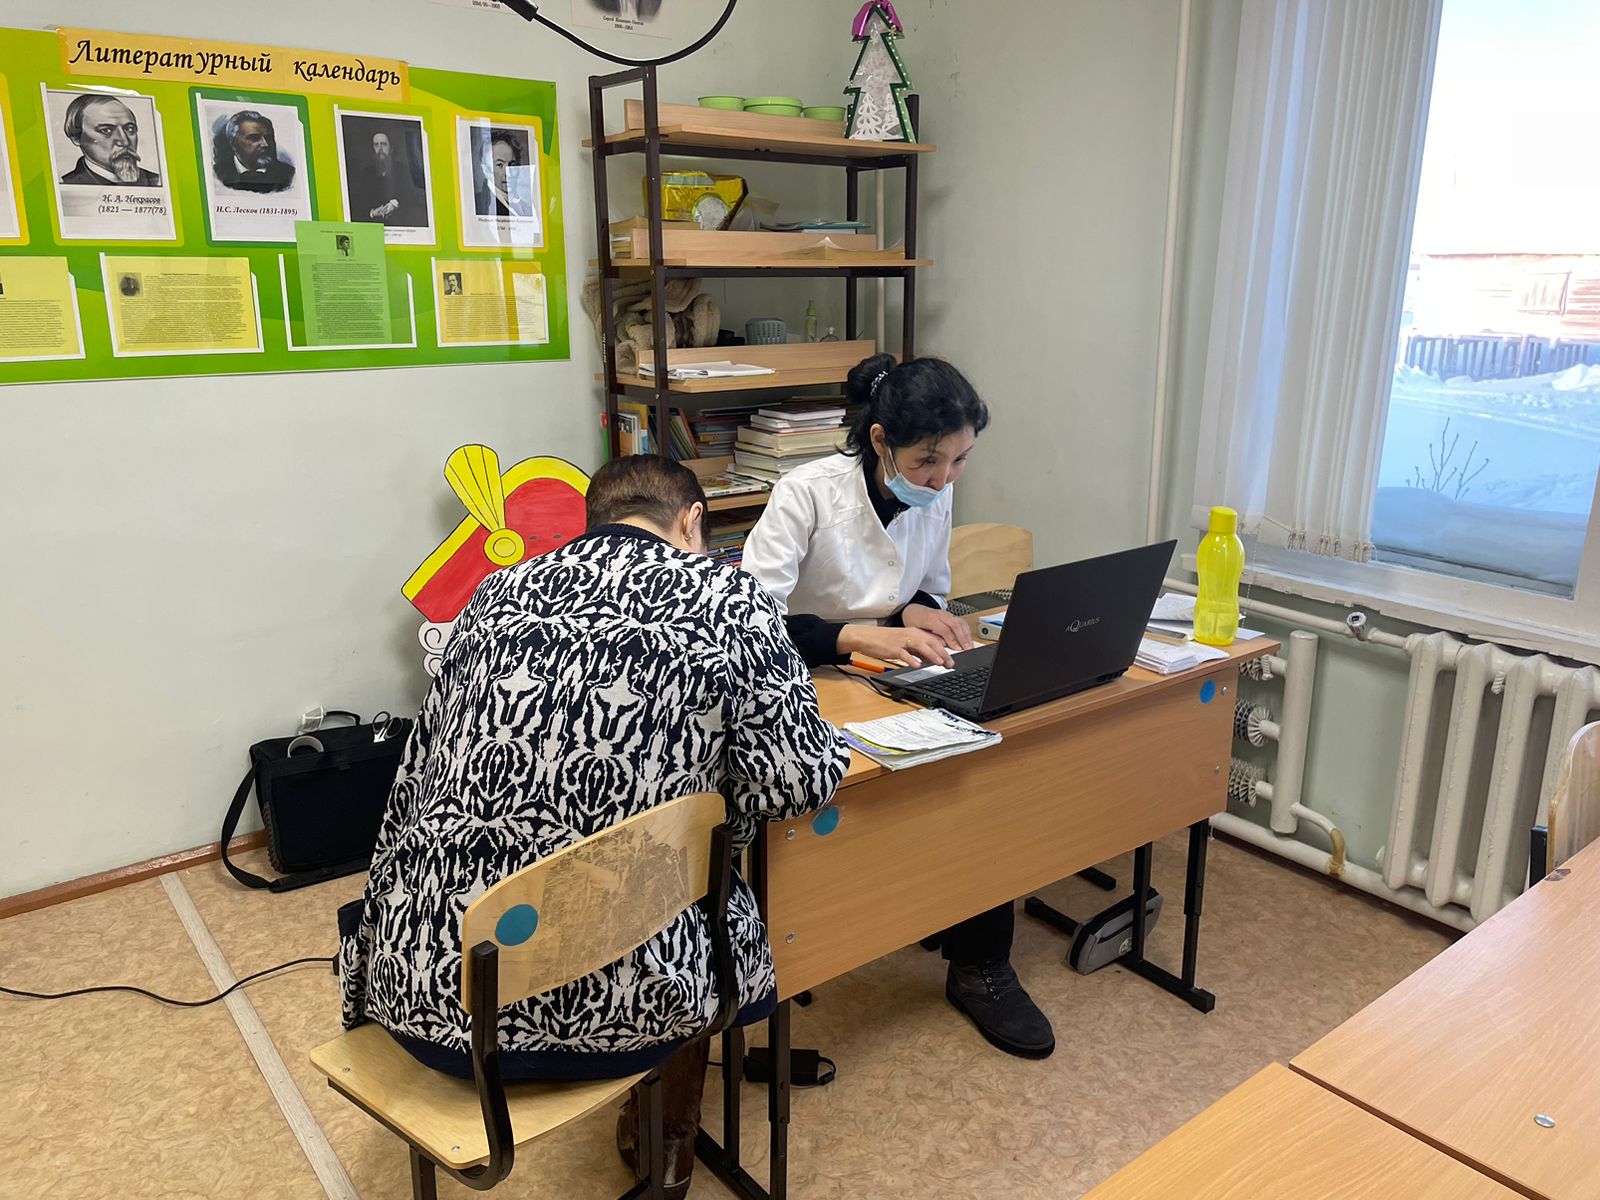 Мобильные врачи осмотрели свыше 300 человек в Усть-Янском районе Якутии